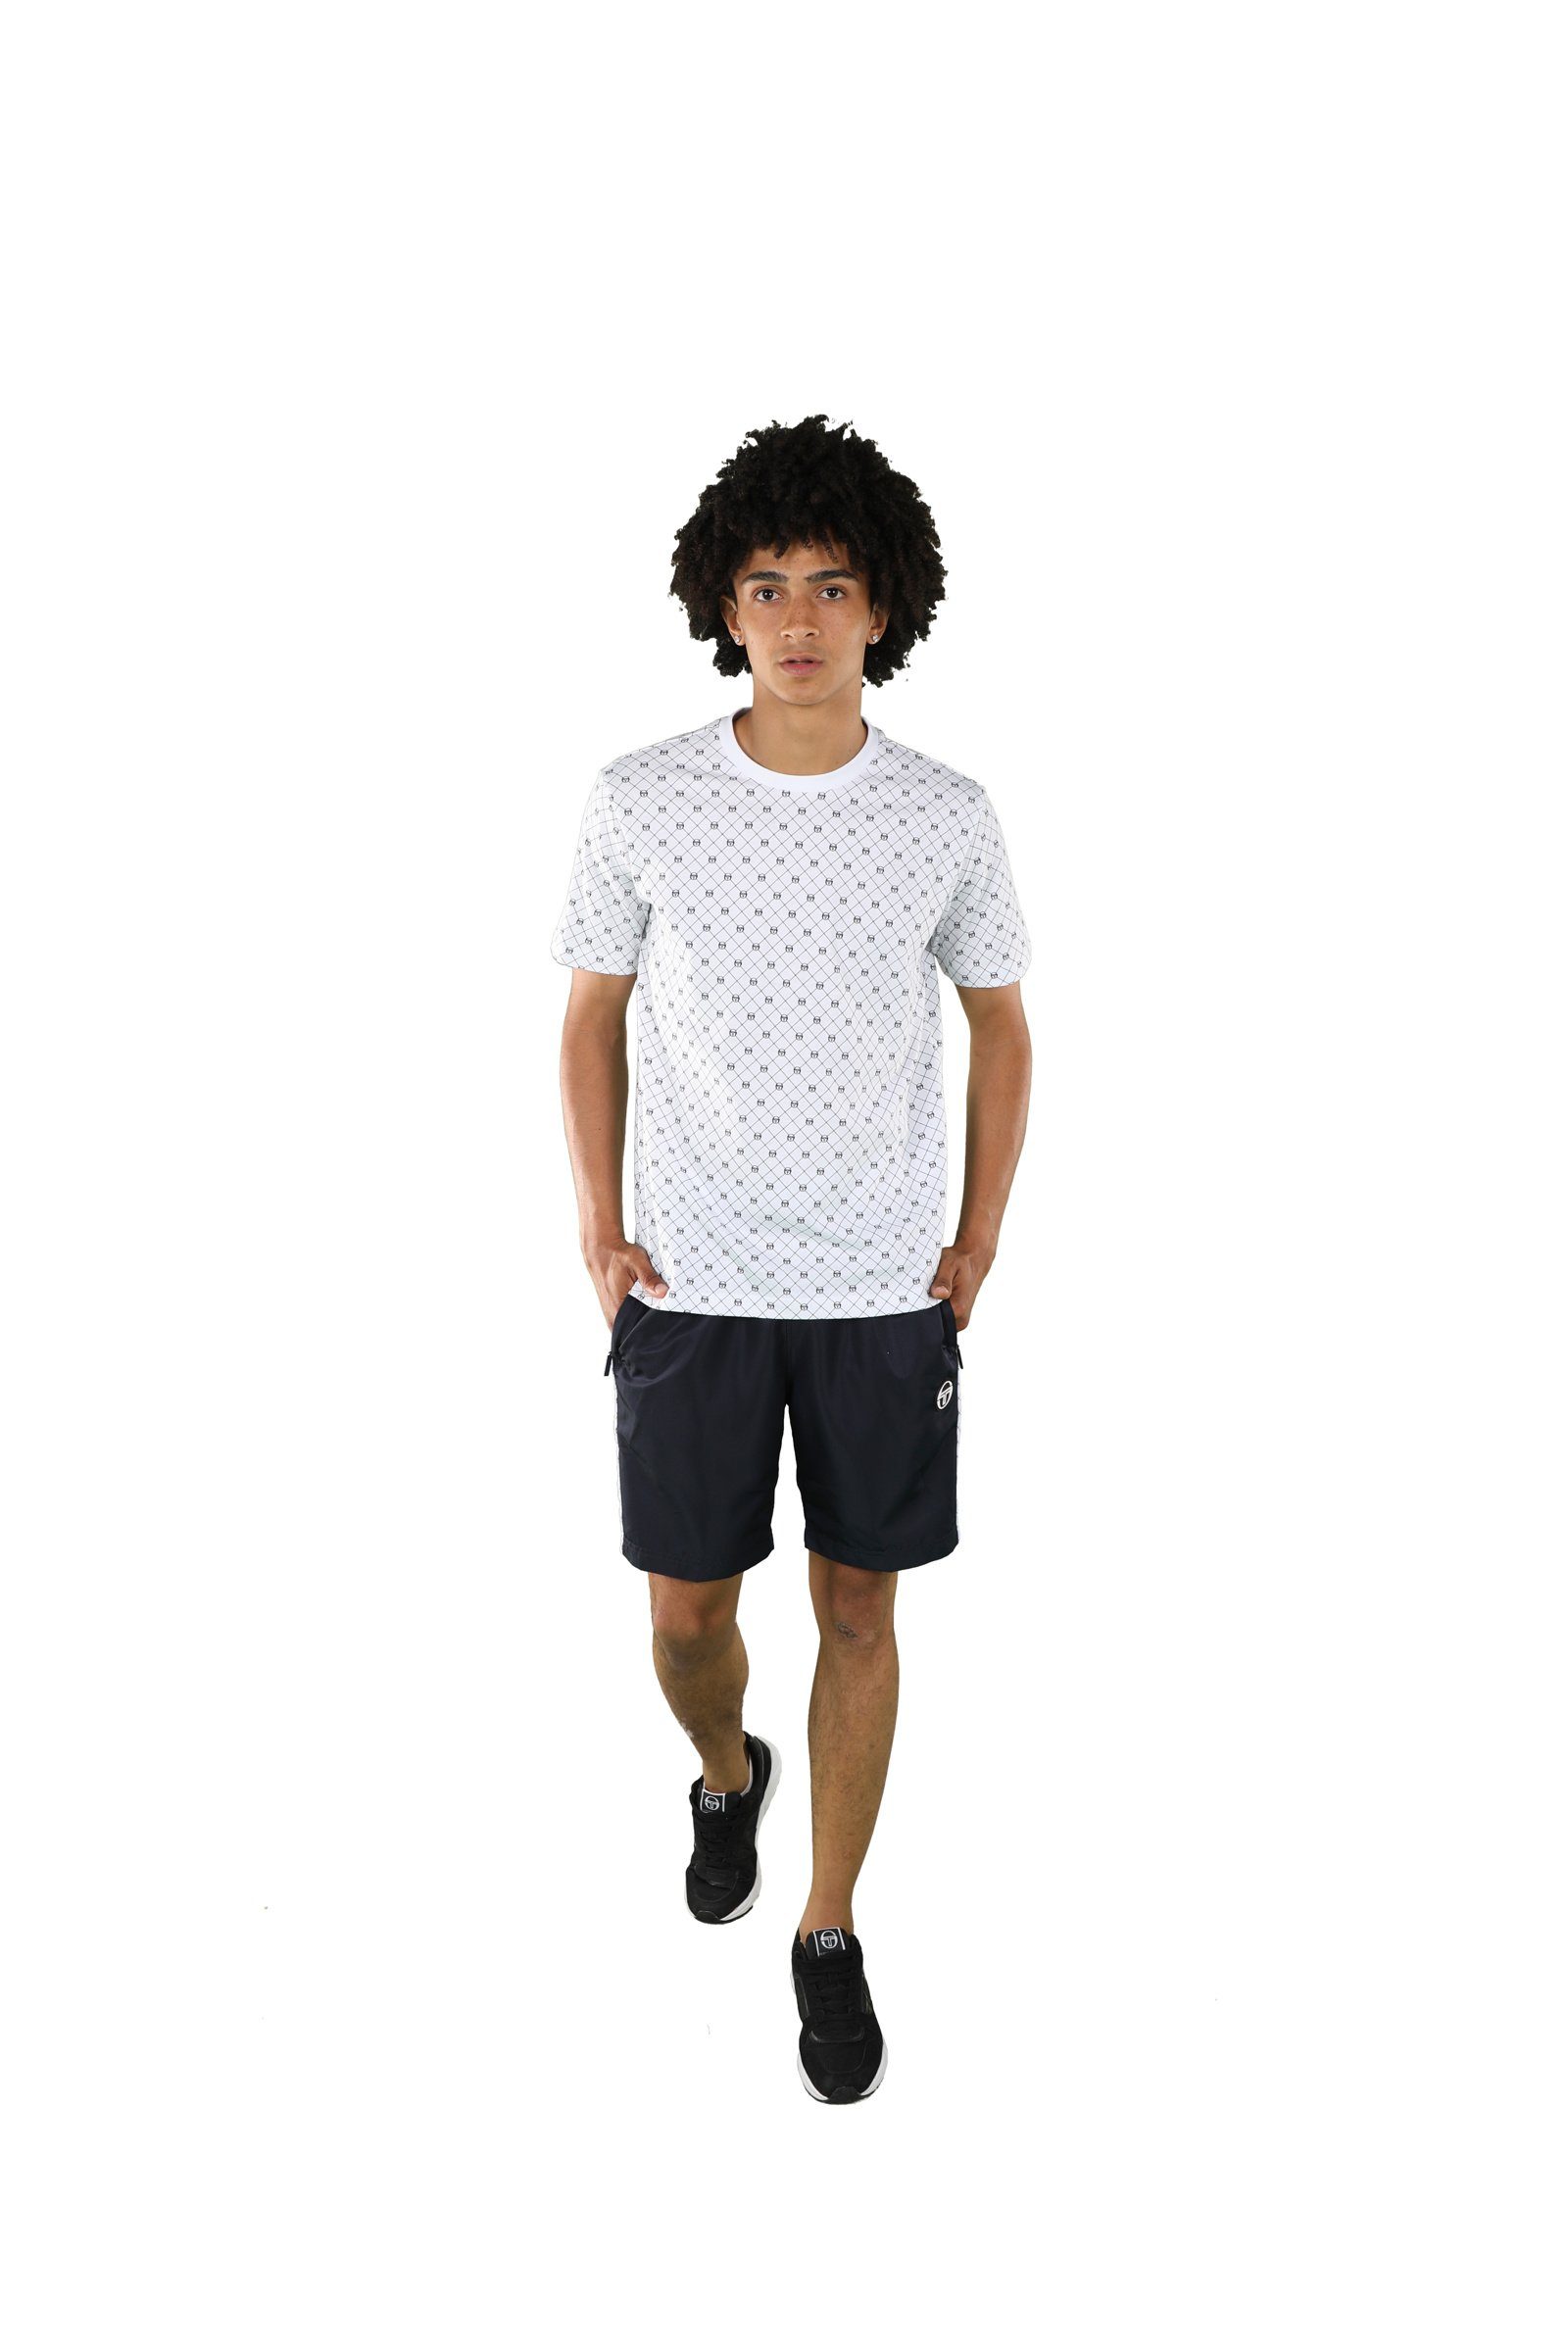 Sergio Tacchini T-Shirt white/navy Herren Adult Sergio T-Shirt Tacchini 2 Rombo